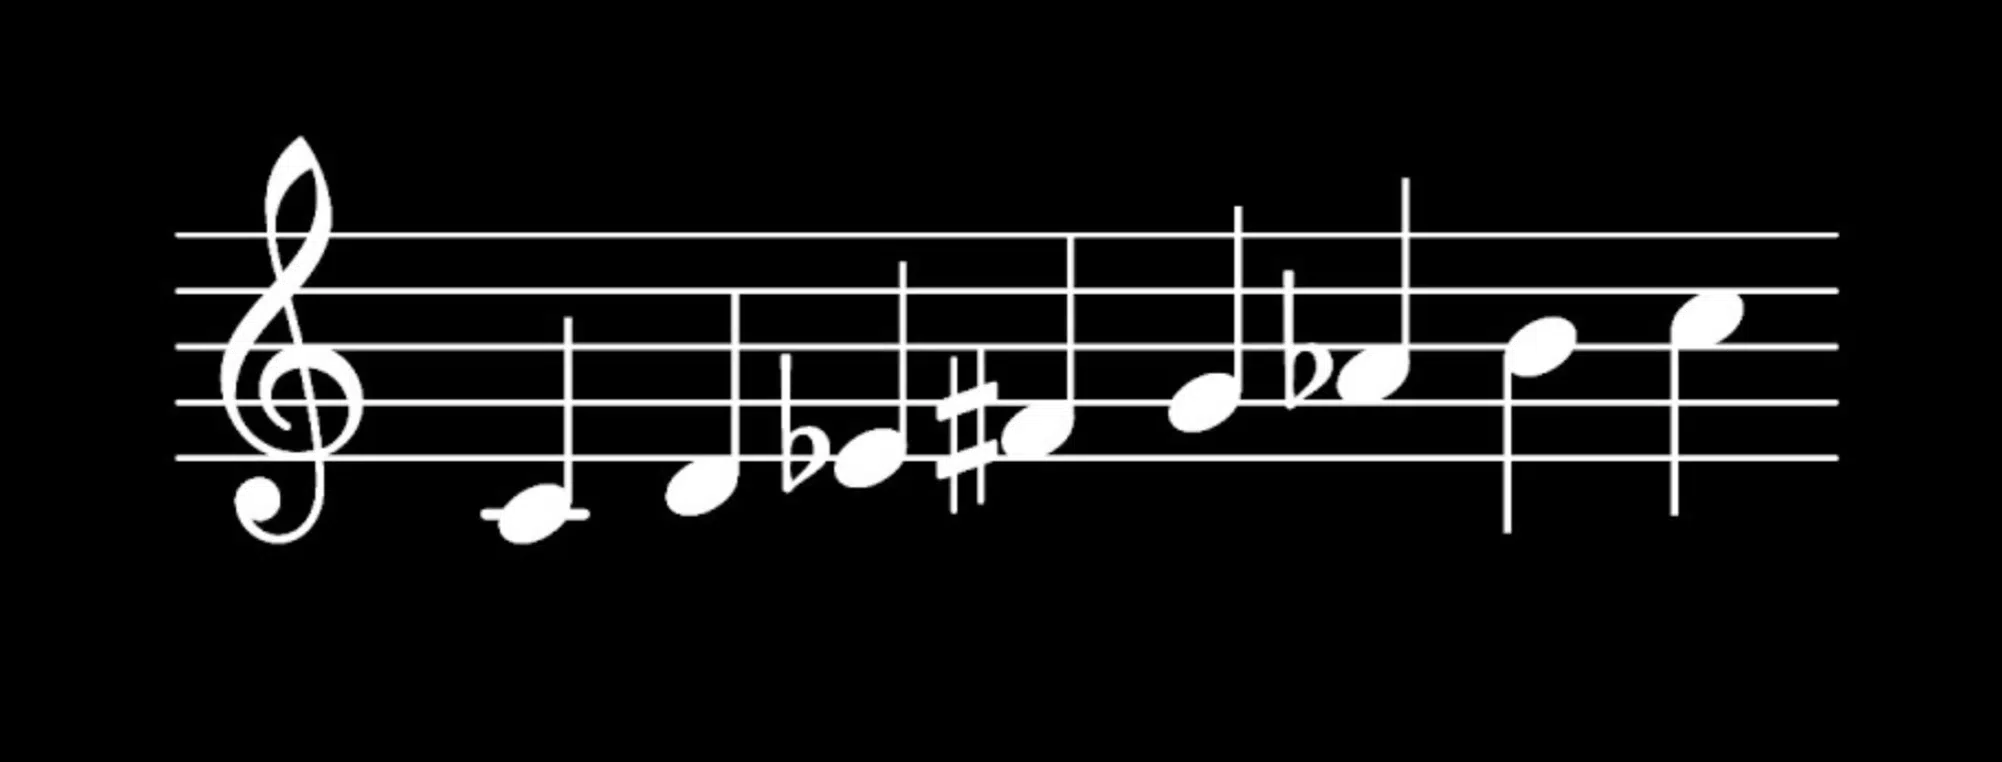 Double Harmonic Minor Scale - Unison